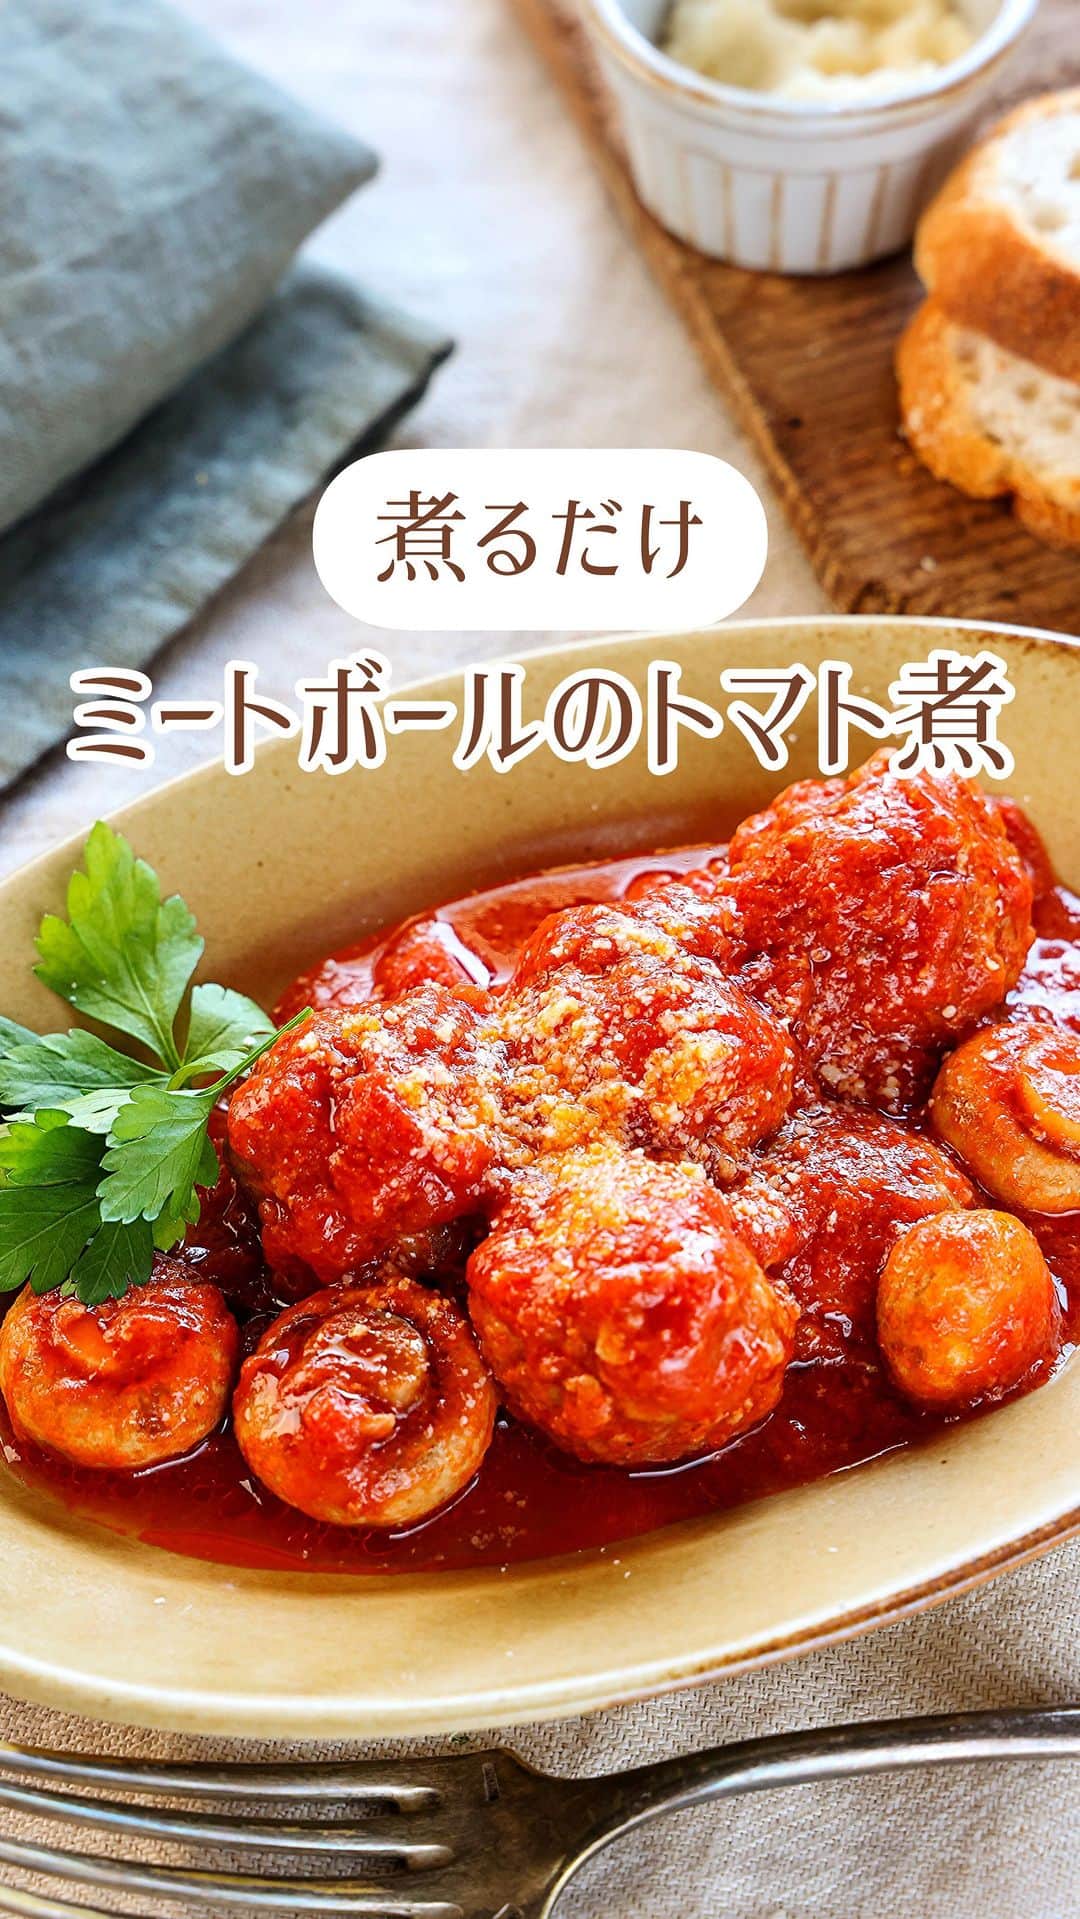 Mizuki【料理ブロガー・簡単レシピ】のインスタグラム：「・全部入れ煮るだけ💕 ⁡ ［#レシピ ］ ーーーーーーーーーーーーーーーーー 煮るだけ！ミートボールのトマト煮 ーーーーーーーーーーーーーーーーー ⁡ ⁡ ⁡ おはようございます☺️ ⁡ 今日ご紹介させていただくのは 煮るだけ簡単！ \ ミートボールのトマト煮 / ⁡ 焼かないから手間なし❣️ フライパンに全部入れて煮るだけ🍳 とっても簡単にできるのに 豪華見えするうれしいおかずです🤭 ⁡ 冷凍OK！お弁当にも使えるので よかったらお試しくださいね✨ パスタにかけてもおいしいですよ〜💕 ⁡ ⁡ ⁡ ⋱⋰ ⋱⋰ ⋱⋰ ⋱⋰ ⋱⋰ ⋱⋰ ⋱⋰ 📍簡単・時短・節約レシピ更新中  Threadsもこちらから▼ @mizuki_31cafe ⁡ 📍謎の暮らし＆変なライブ垢 @mizuki_kurashi ⋱⋰ ⋱⋰ ⋱⋰ ⋱⋰ ⋱⋰ ⋱⋰ ⋱⋰ ⁡ ⁡ ⁡ ＿＿＿＿＿＿＿＿＿＿＿＿＿＿＿＿＿＿＿ 【3〜4人分】 ⚫︎合い挽き肉...300g ⚫︎玉ねぎ(みじん切り)...1/4個 ⚫︎卵...1個 ⚫︎片栗粉...大1 ⚫︎塩こしょう...少々 マッシュルーム...8〜10個 ☆カットトマト缶...1缶(400g) ☆水...100ml ☆ケチャップ...大1 ☆コンソメ...大1/2 ☆砂糖...小1 粉チーズ...適量 ⁡ 1.ボウルに⚫︎を入れてよく混ぜ、15等分に丸める。 2.フライパンに☆を入れて中火で煮立て、1とマッシュルームを加える。蓋をして弱火で12分煮込む。 3.スプーンでざっと混ぜ、火が通ったら器に盛って粉チーズをかける。 ￣￣￣￣￣￣￣￣￣￣￣￣￣￣￣￣￣￣￣ ⁡ ⁡ 《ポイント》 ♦︎肉だねの塩こしょうはしっかり効かせておくと味がぼやけません♩ ♦︎肉だねは粘りが出るまでしっかり混ぜてください♩ ♦︎マッシュルームの代わりに他のきのこを使っても○ ⁡ ⁡ ⁡ ⁡ ⁡ ⁡ ⋱⋰ ⋱⋰ ⋱⋰ ⋱⋰ ⋱⋰ ⋱⋰ ⋱⋰  愛用している調理器具・器など   #楽天ROOMに載せてます ‎𐩢𐩺  (ハイライトから飛べます🕊️) ⋱⋰ ⋱⋰ ⋱⋰ ⋱⋰ ⋱⋰ ⋱⋰ ⋱⋰ ⁡ ⁡ ⁡ ⁡ ⁡ ✼••┈┈┈┈┈••✼••┈┈┈┈┈••✼ 今日のごはんこれに決まり！ ‎𓊆#Mizukiのレシピノート 500品𓊇 ✼••┈┈┈┈┈••✼••┈┈┈┈┈••✼ ⁡ ˗ˏˋ おかげさまで25万部突破 ˎˊ˗ 料理レシピ本大賞準大賞を受賞しました✨ ⁡ 6000点の中からレシピを厳選し まさかの【500レシピ掲載】 肉や魚のメインおかずはもちろん 副菜、丼、麺、スープ、お菓子 ハレの日のレシピ、鍋のレシピまで 全てこの一冊で完結 𓌉◯𓇋 (全国の書店・ネット書店で発売中) ⁡ ⁡ ⁡ ⁡ ⁡ ⁡ #ミートボール #肉団子 #トマト煮 #トマト煮込み #ひき肉レシピ #きのこレシピ #お弁当 #作り置き #節約料理  #簡単料理  #時短料理 #mizukiレシピ  #時短レシピ #節約レシピ #簡単レシピ」